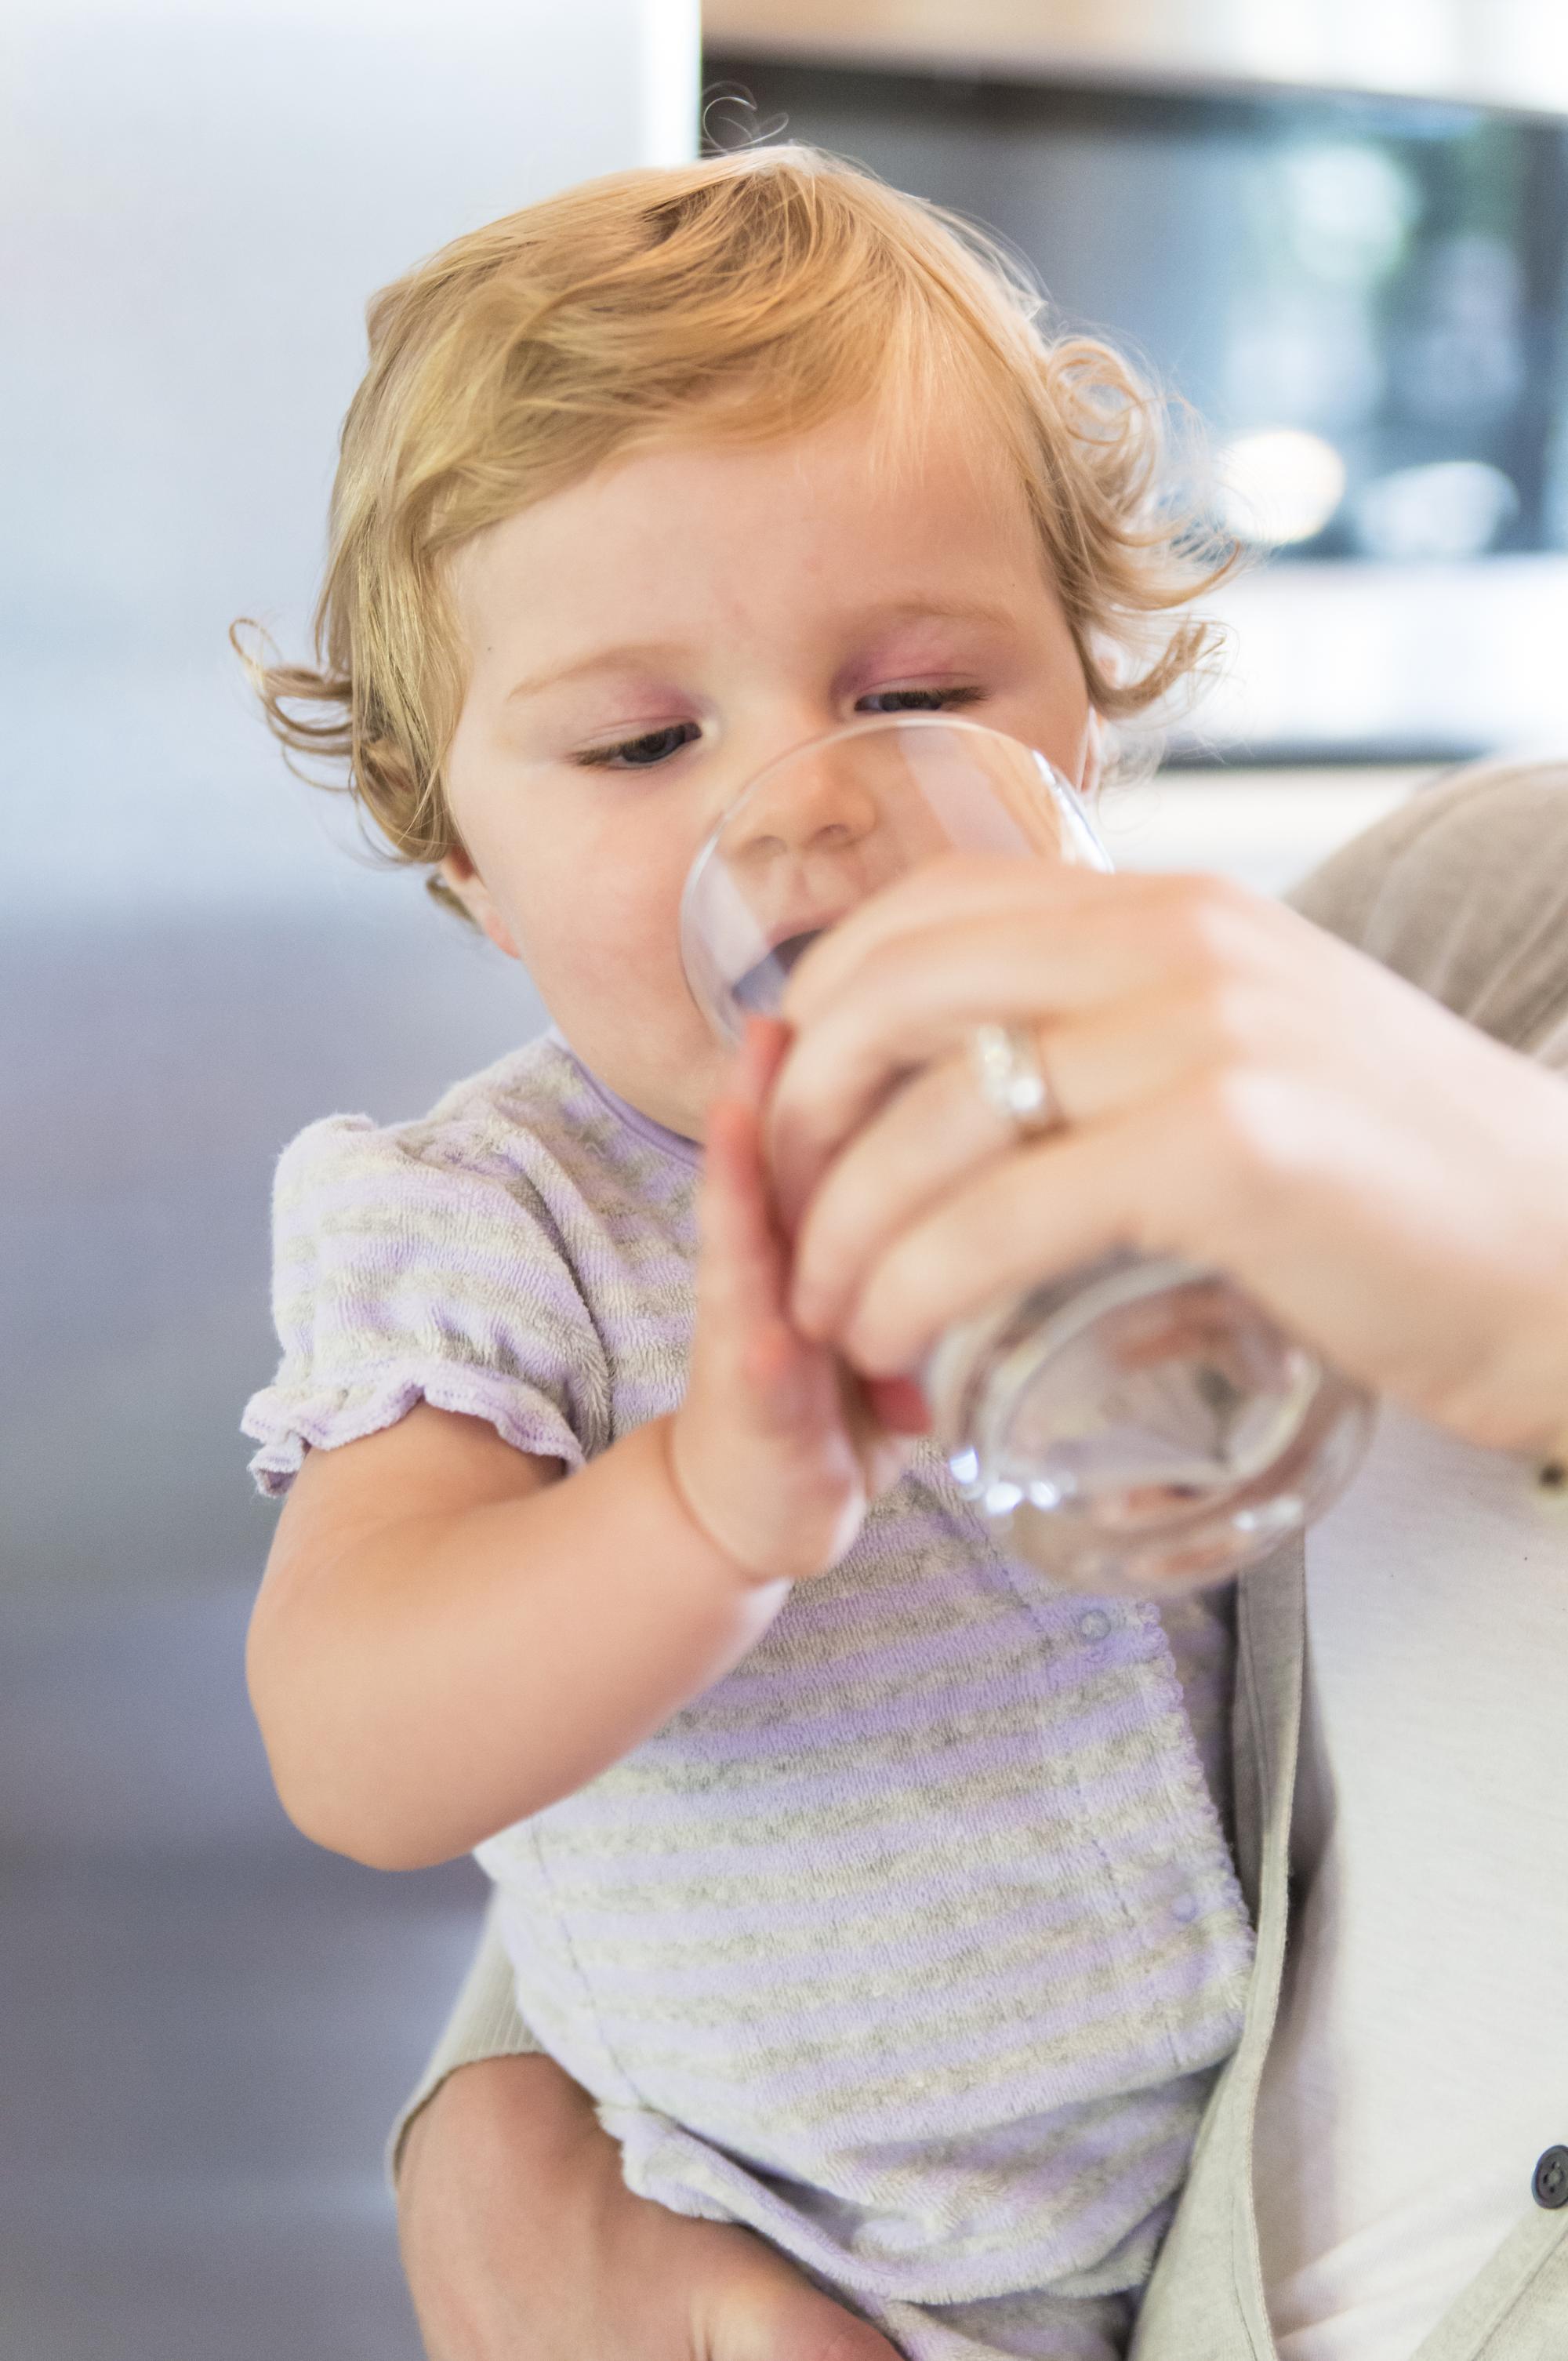 Kupovať dojčenskú vodu v plaste, skle alebo stačí z vodovodu? Radí detská  lekárka | Najmama.sk